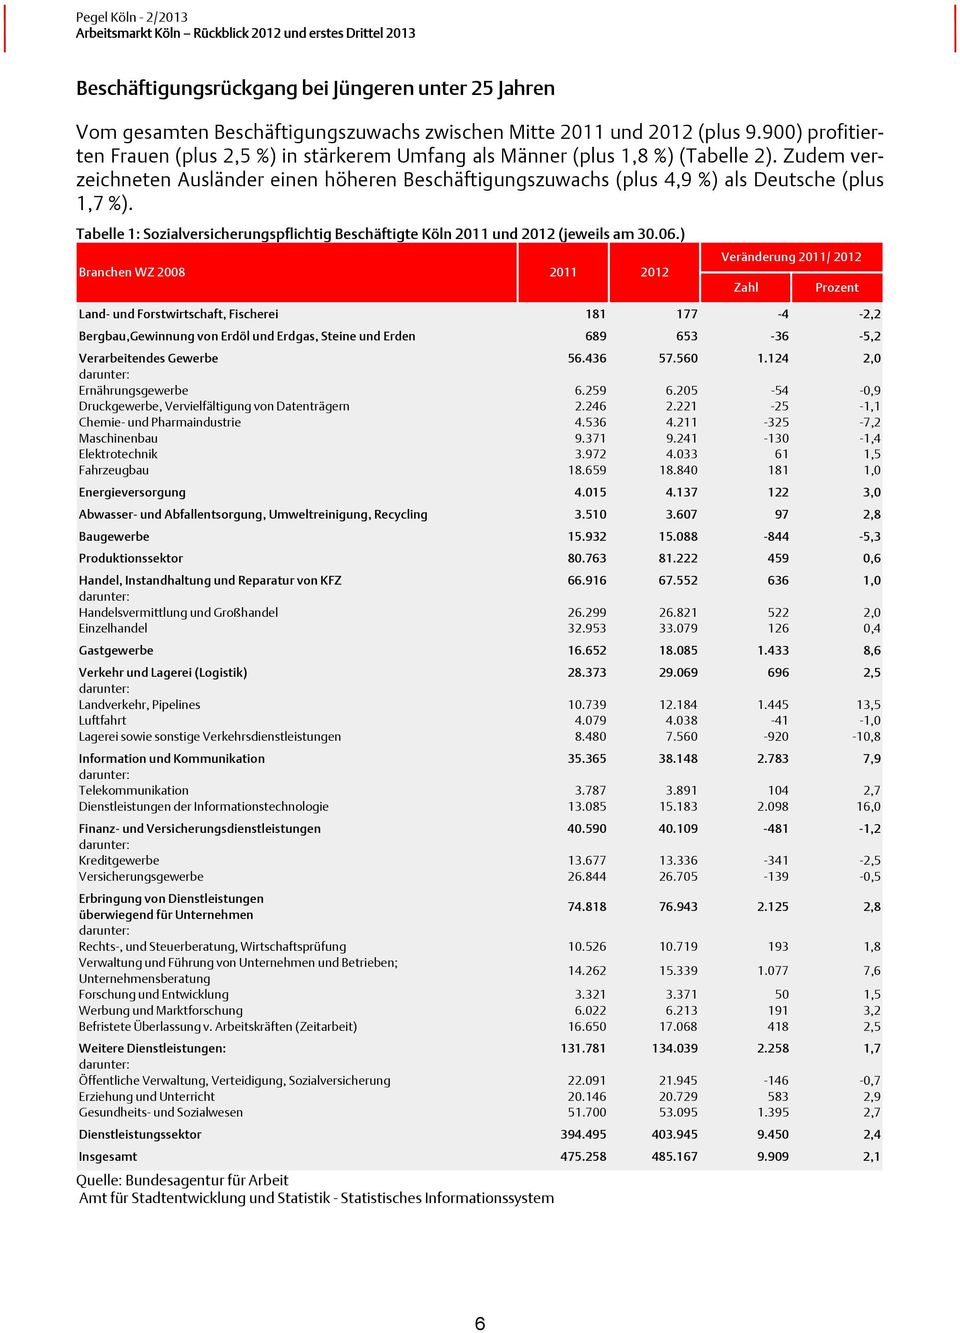 Tabelle 1: Sozialversicherungspflichtig Beschäftigte Köln 2011 und 2012 (jeweils am 30.06.